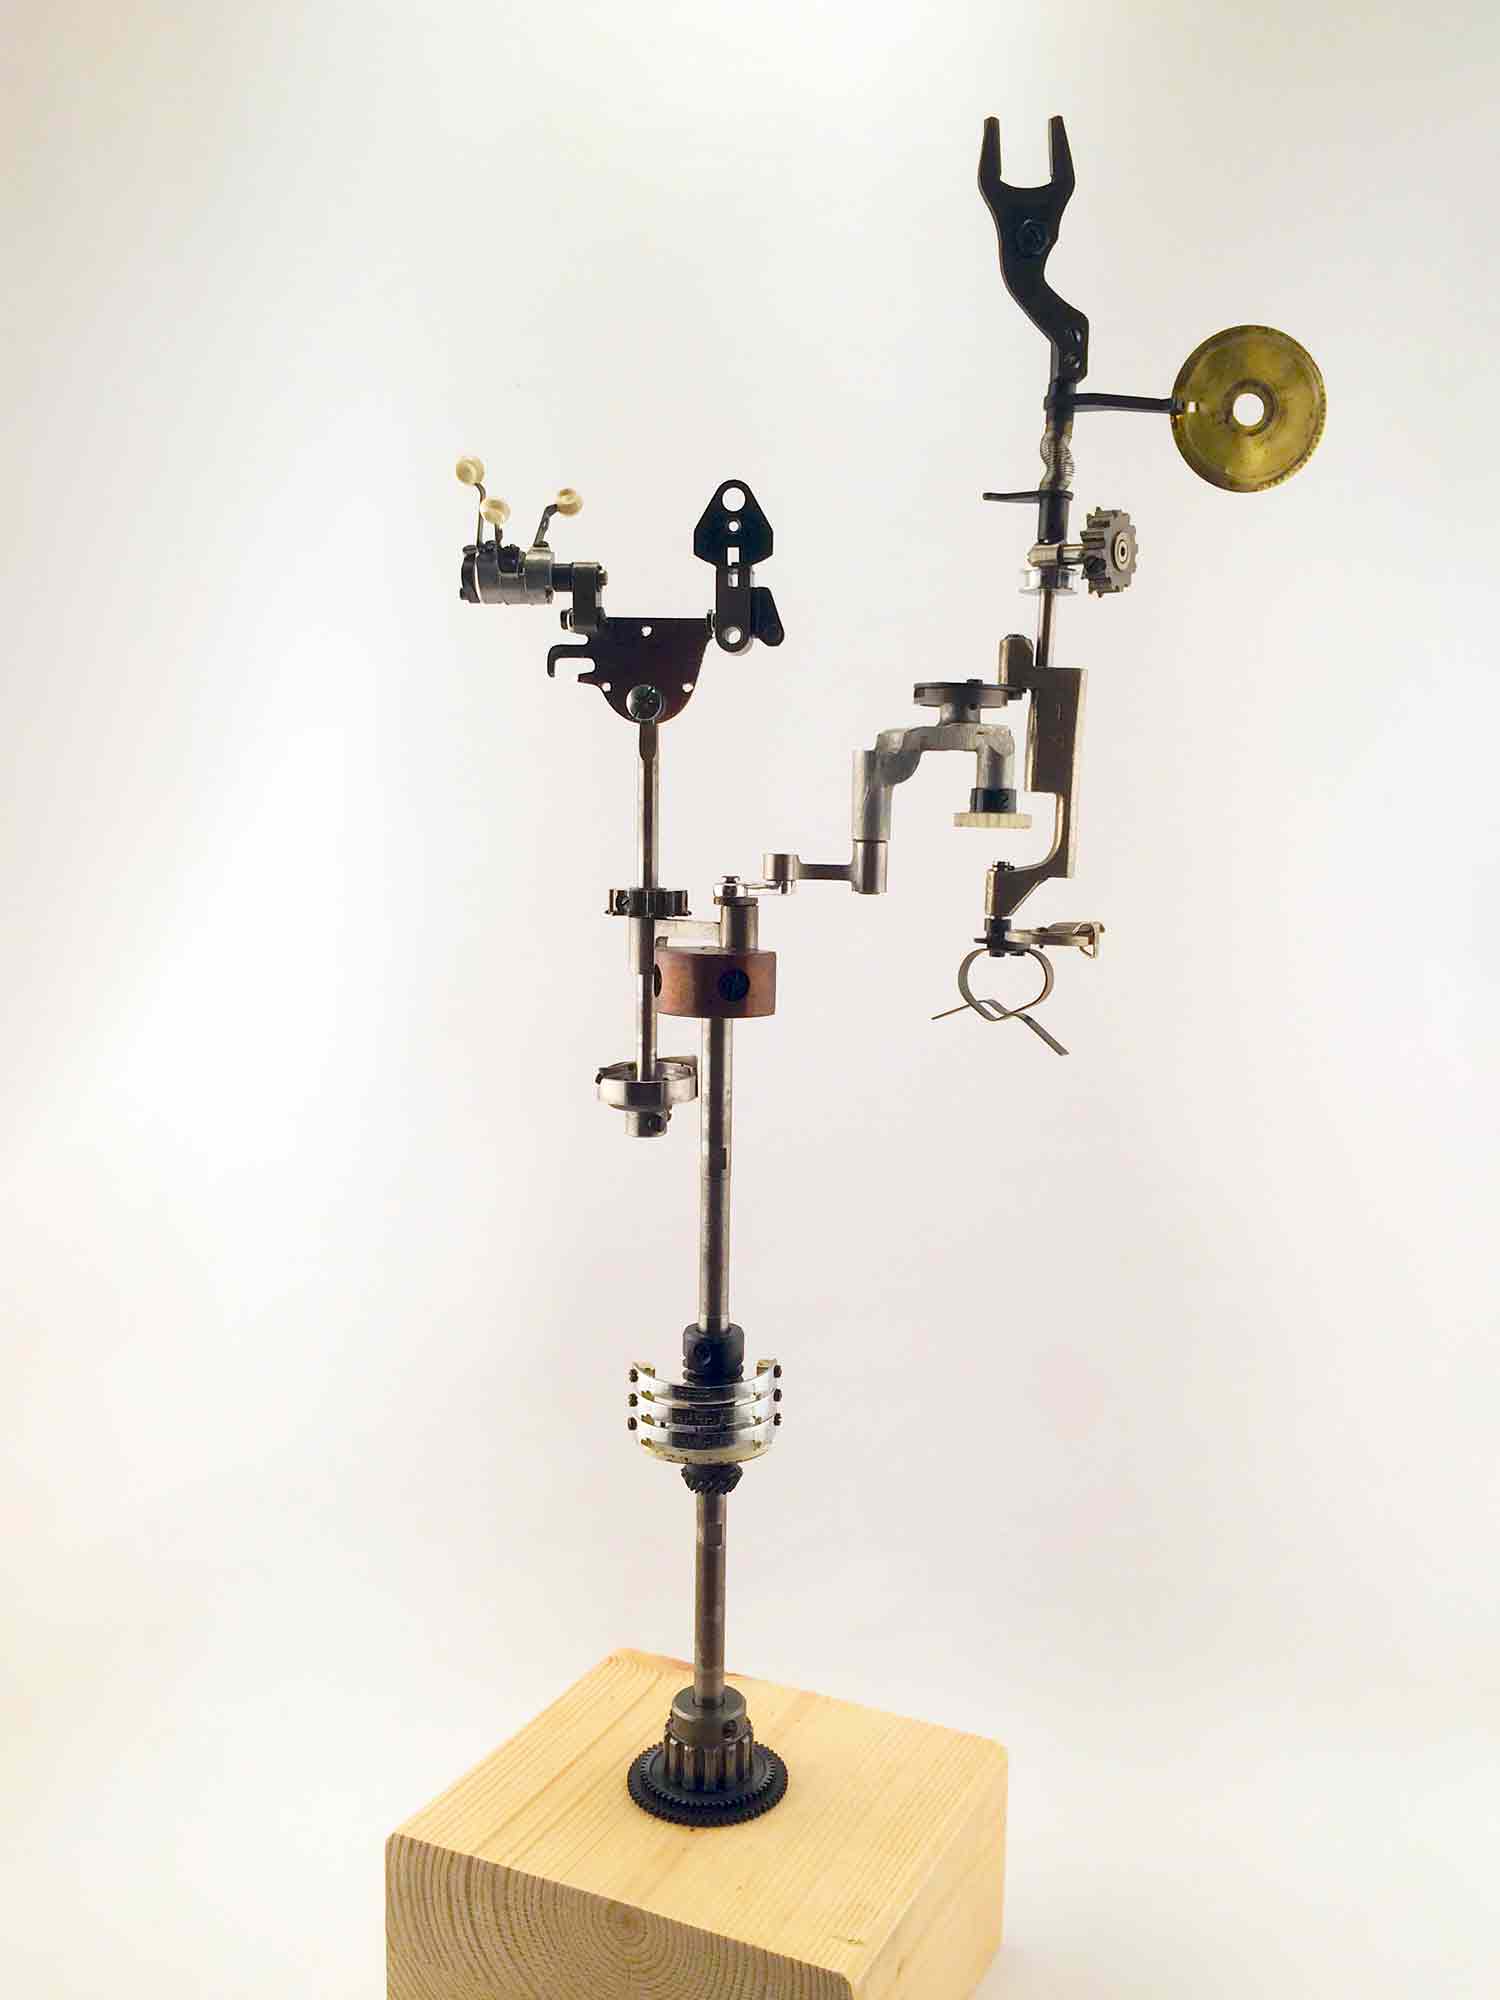 Escultura de una interpretación de una máquina de coser